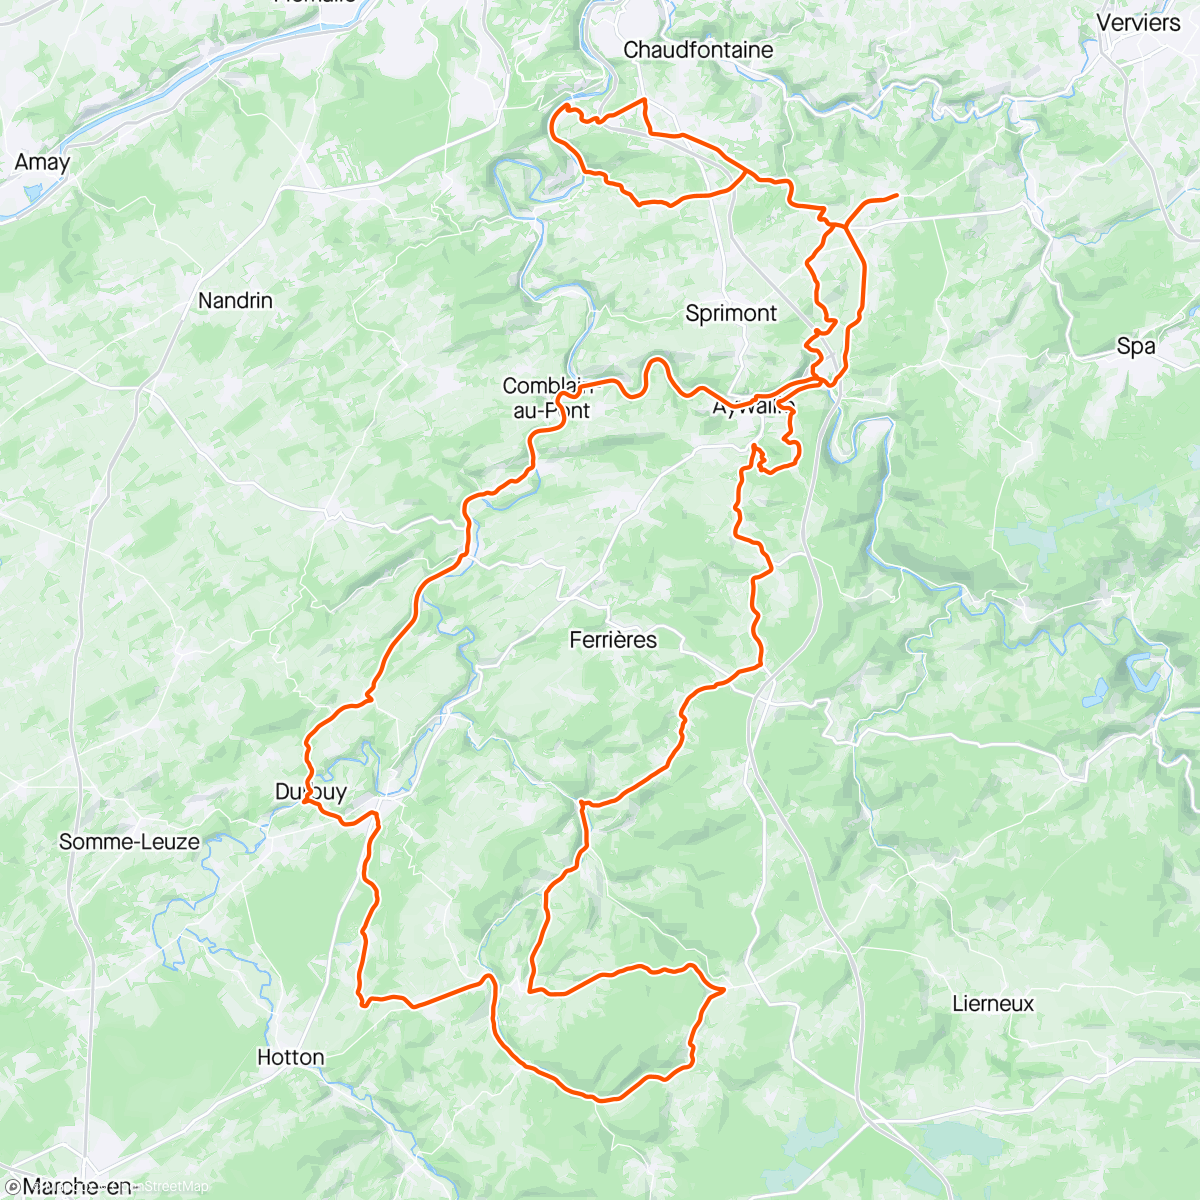 Map of the activity, Luik - Bastenaken - Luik